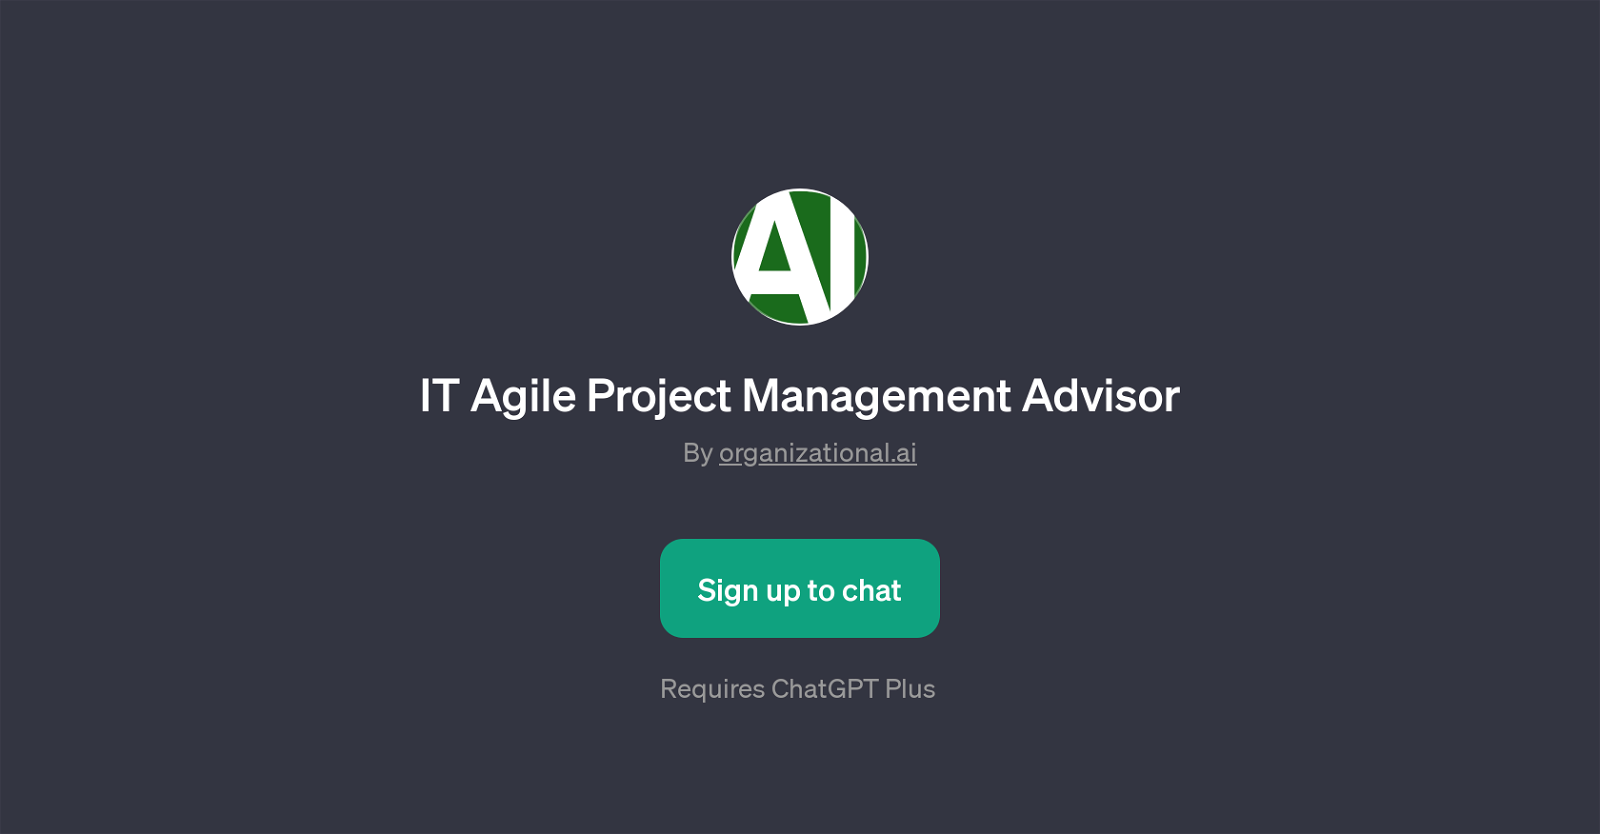 IT Agile Project Management Advisor website